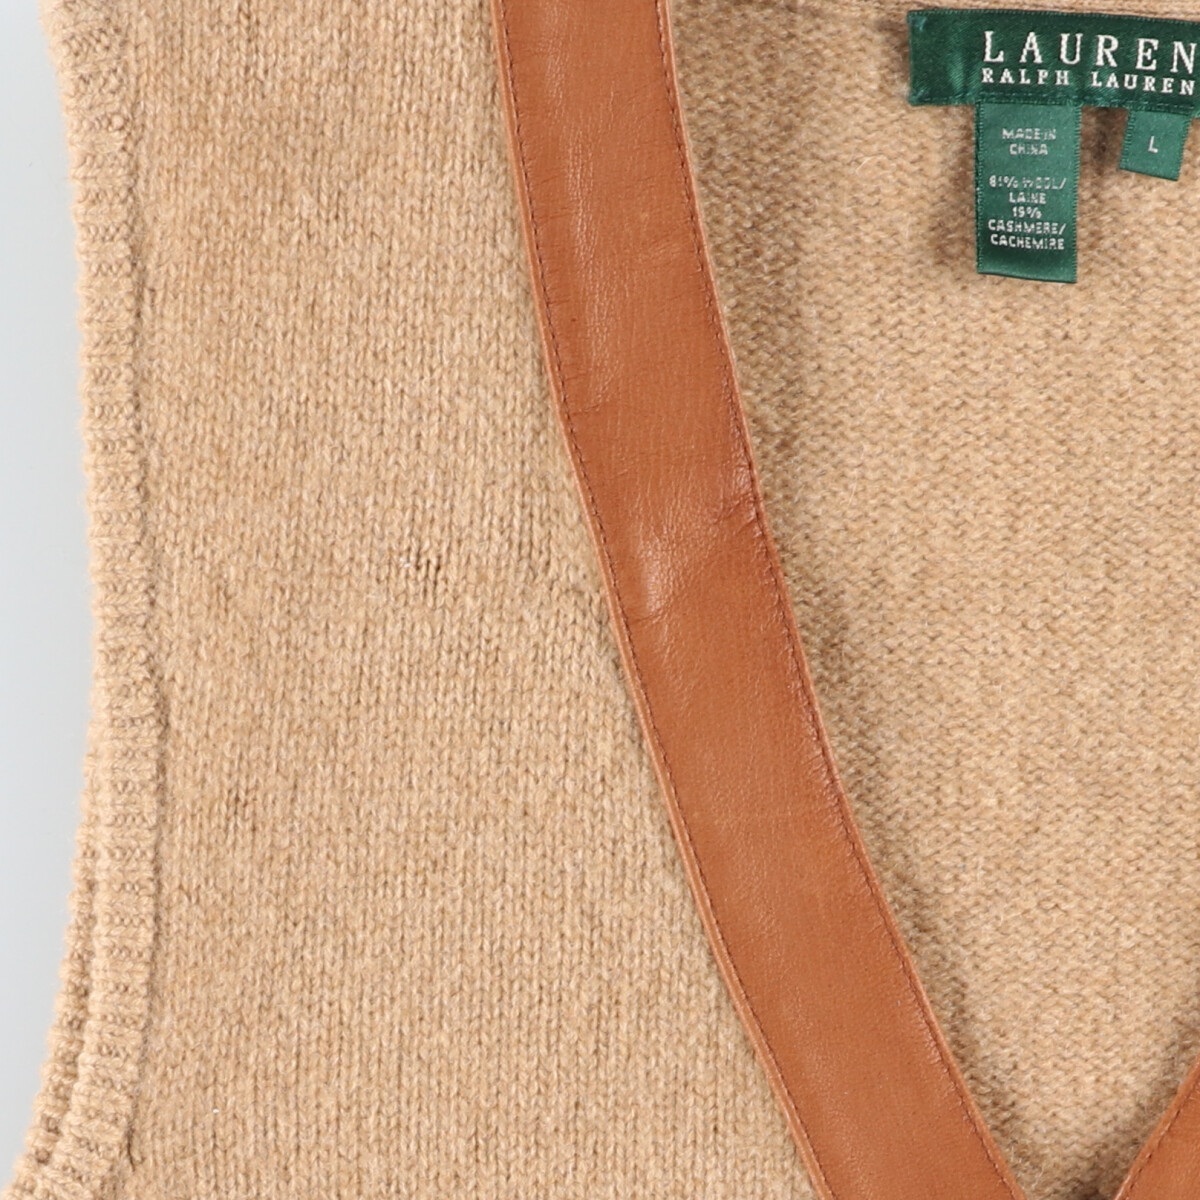  old clothes Ralph Lauren Ralph Lauren LAUREN low Len front opening wool knitted the best lady's L /eaa412793